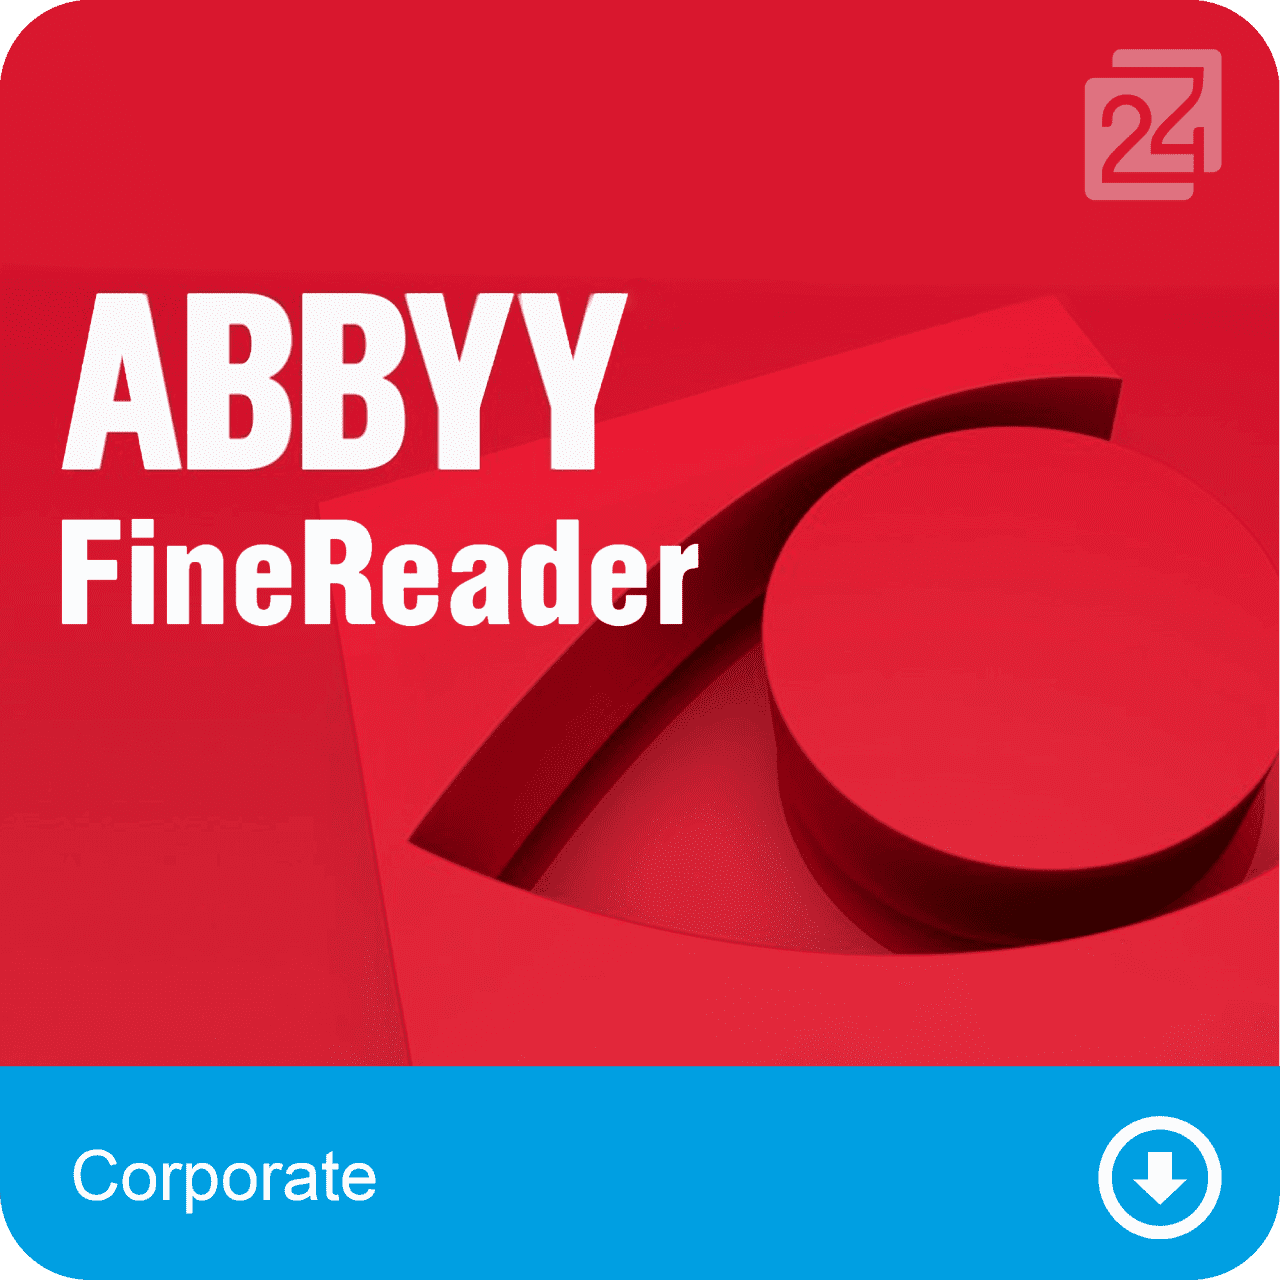 Bild von ABBYY FineReader Corporate Edition, 3 Lizenz(en) Optische Zeichenerkennung (OCR)